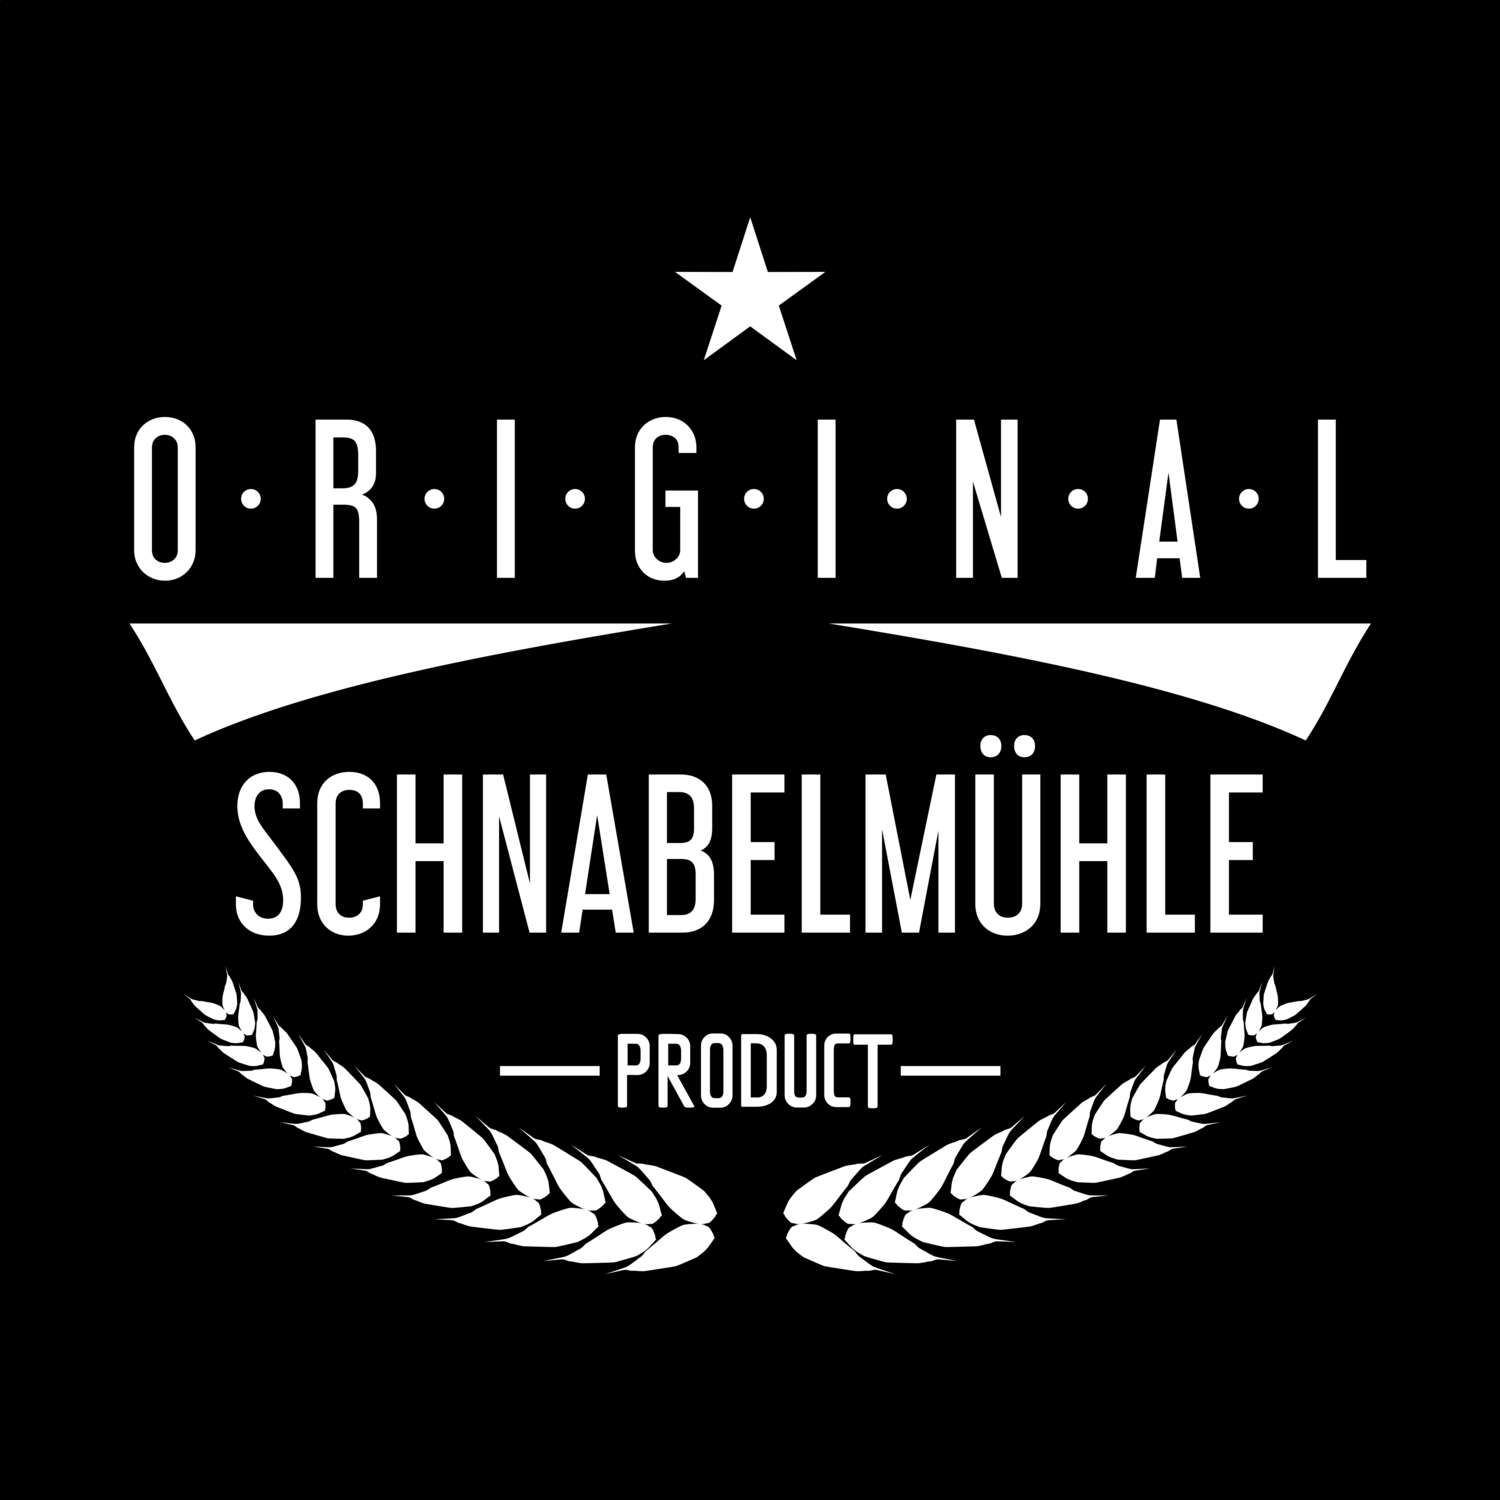 Schnabelmühle T-Shirt »Original Product«